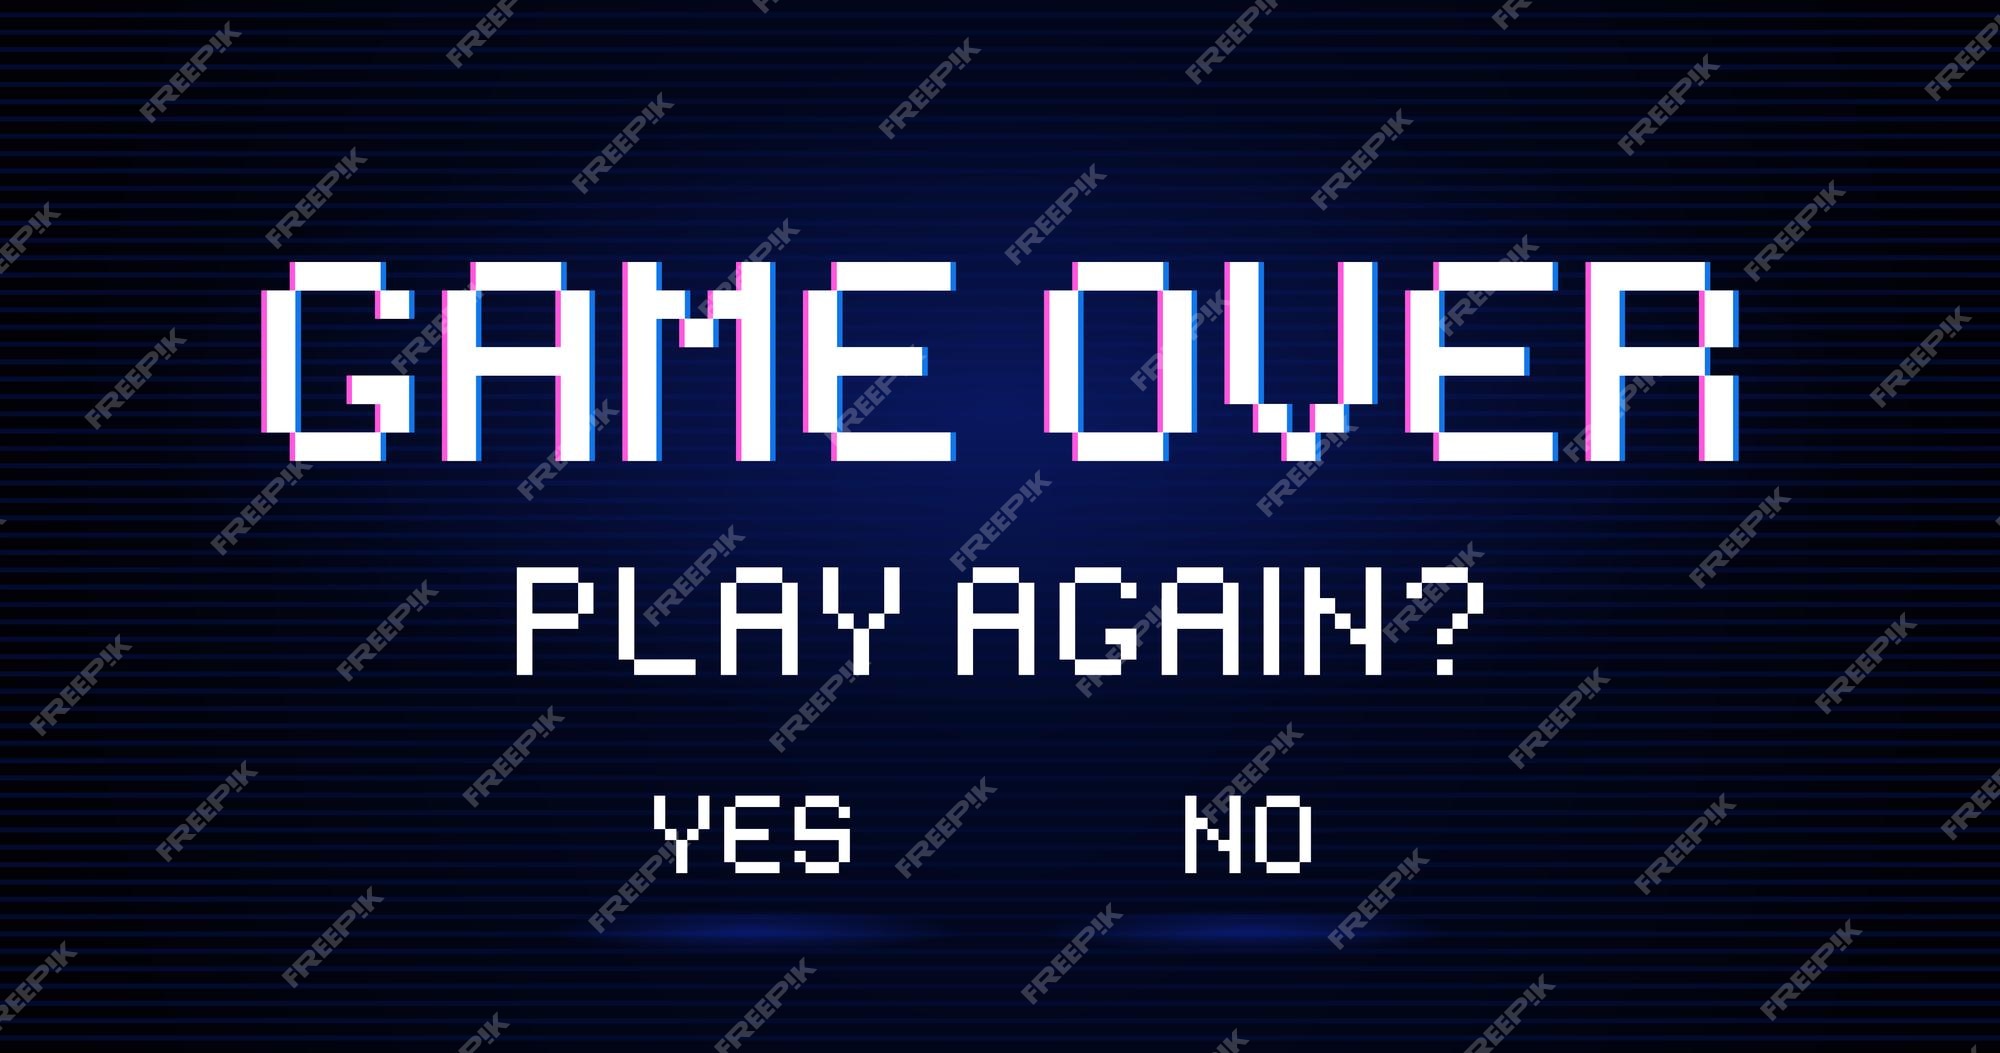 Game over inscrição solicitando que a pessoa jogue novamente com opções de  resposta sim ou não tela de jogos da moda moderna com efeito de iluminação  design de arte para controlador de